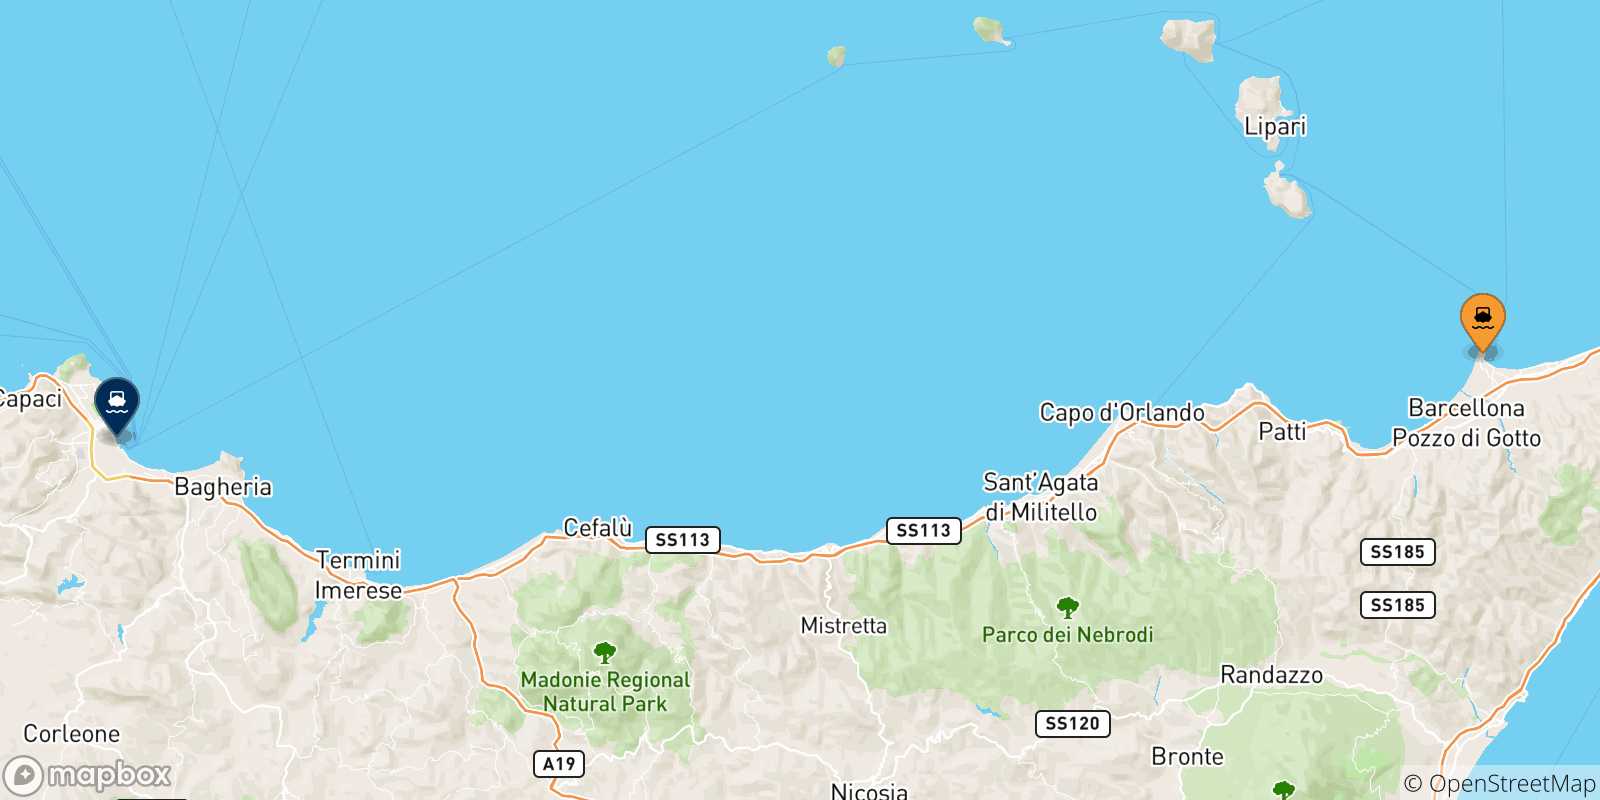 Mappa delle possibili rotte tra Milazzo e la Sicilia